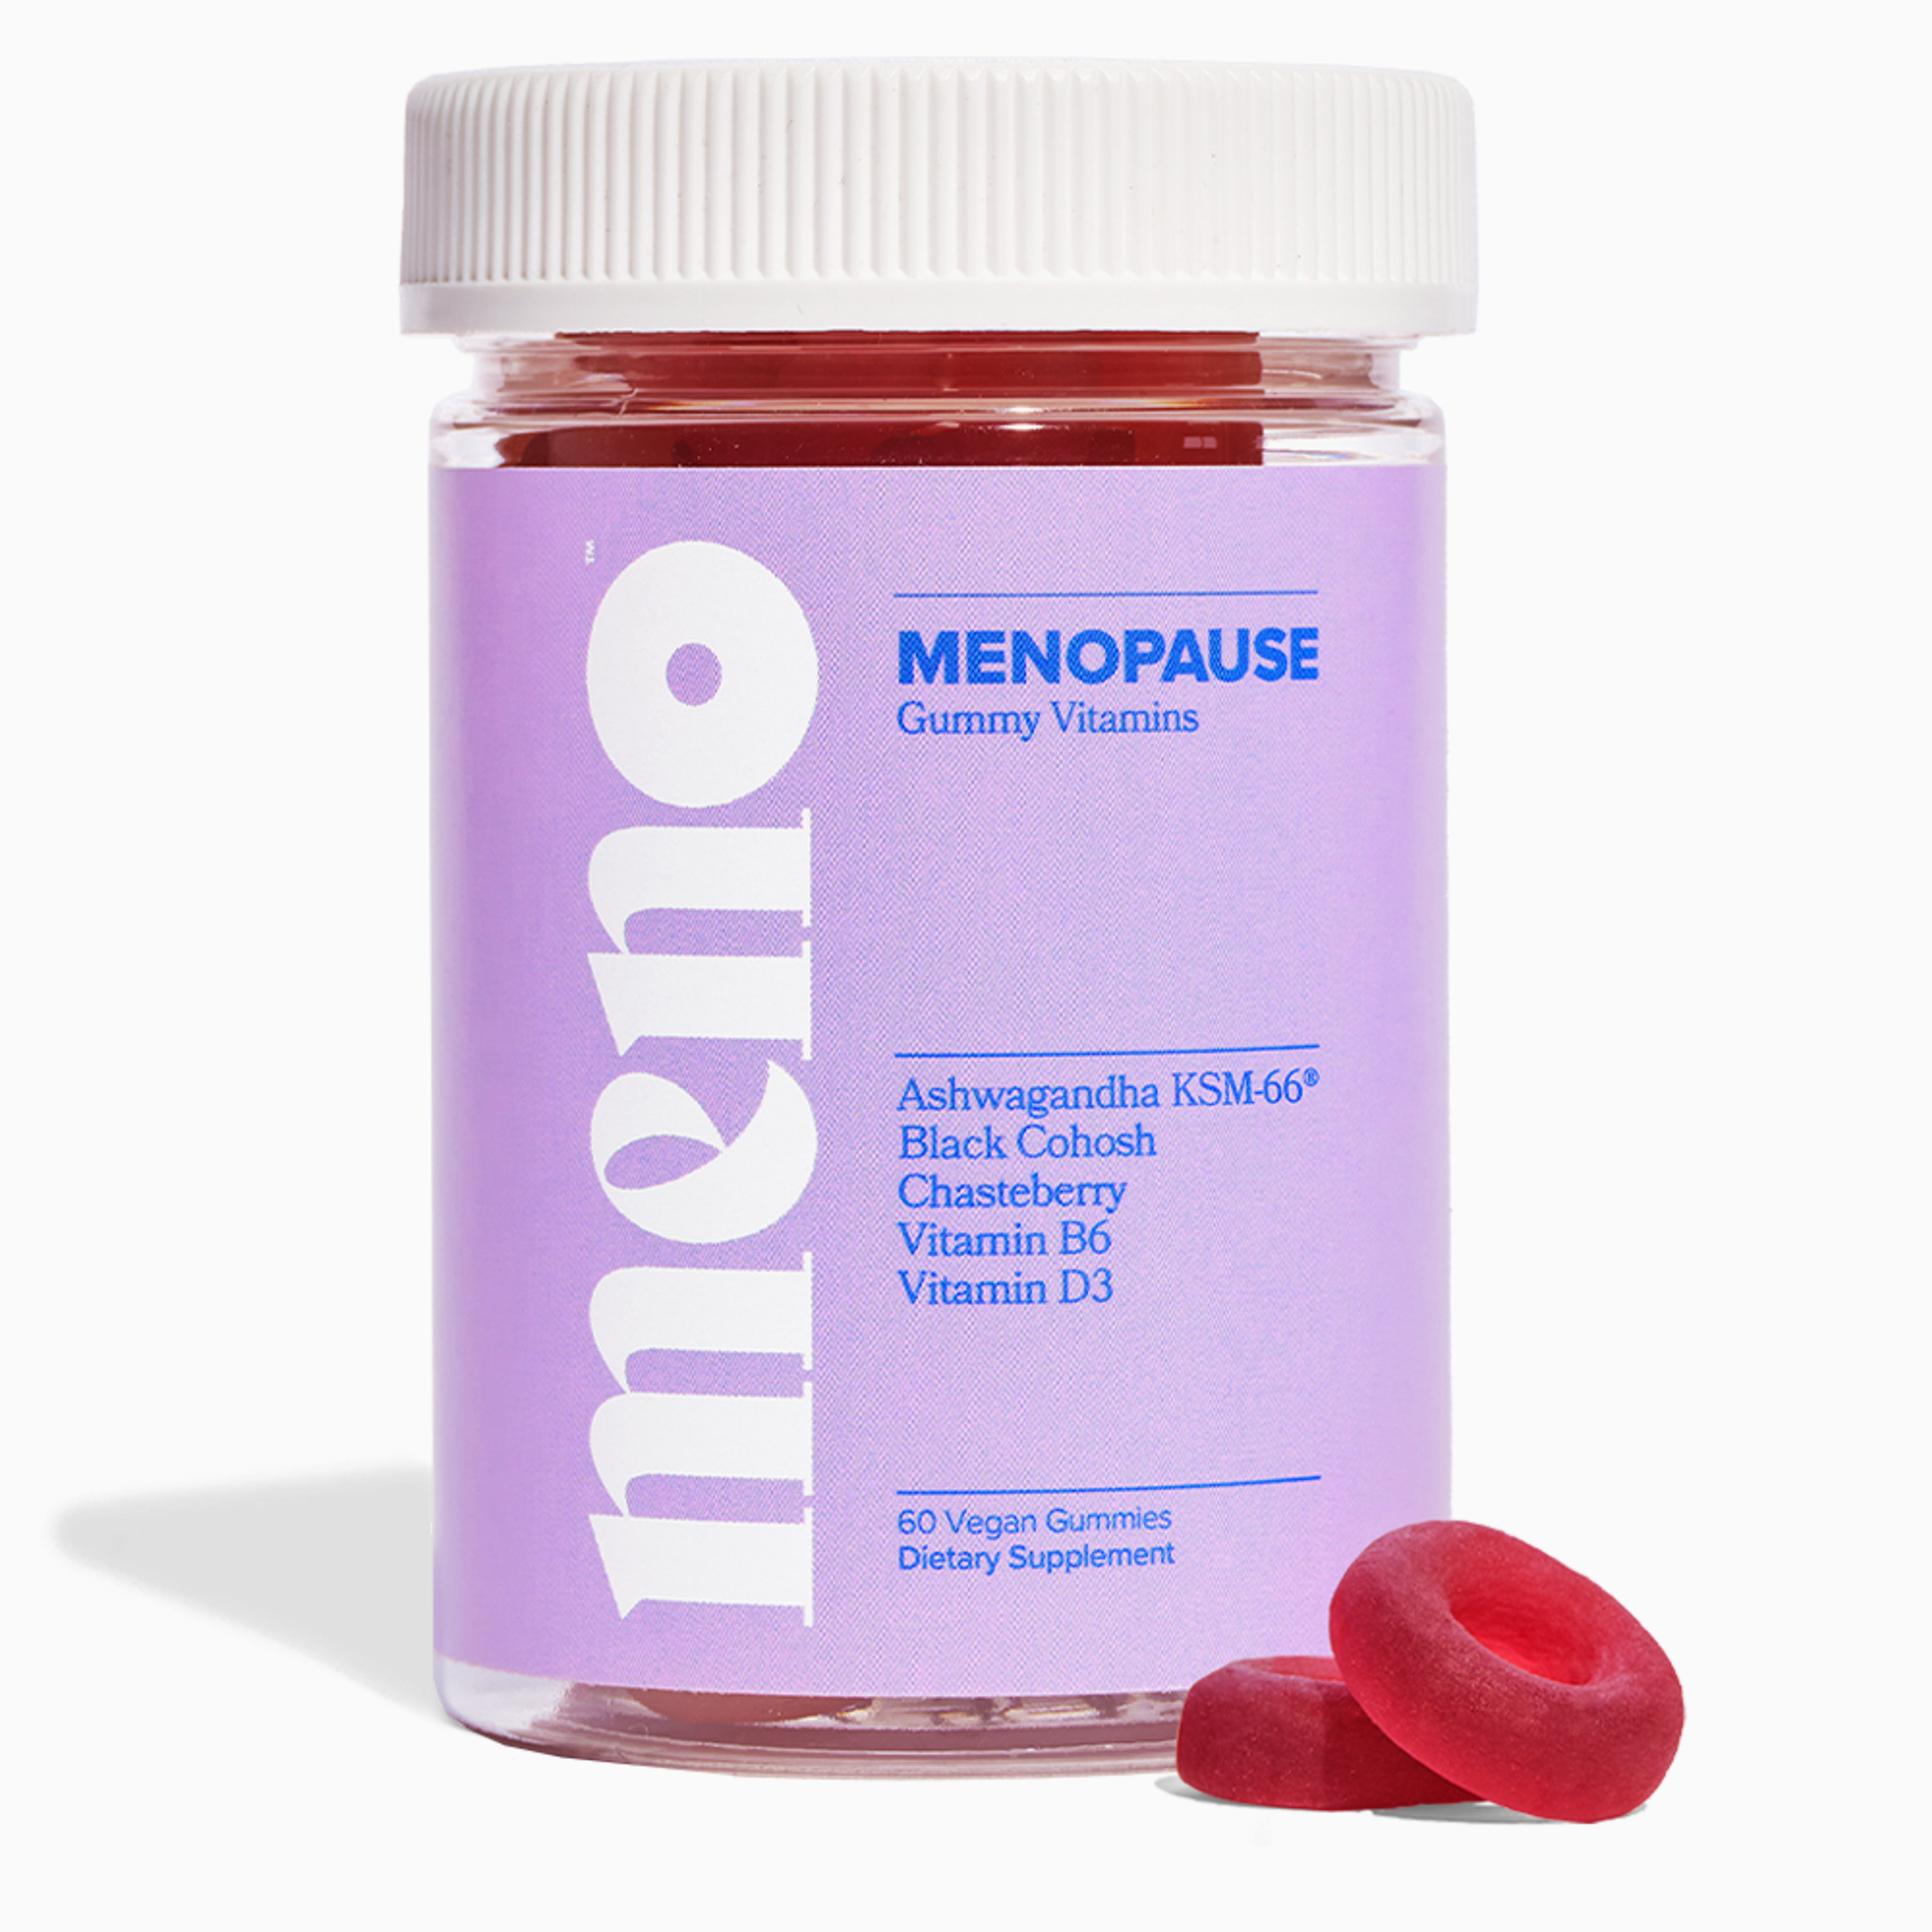 MENO - Menopause Gummy Vitamin